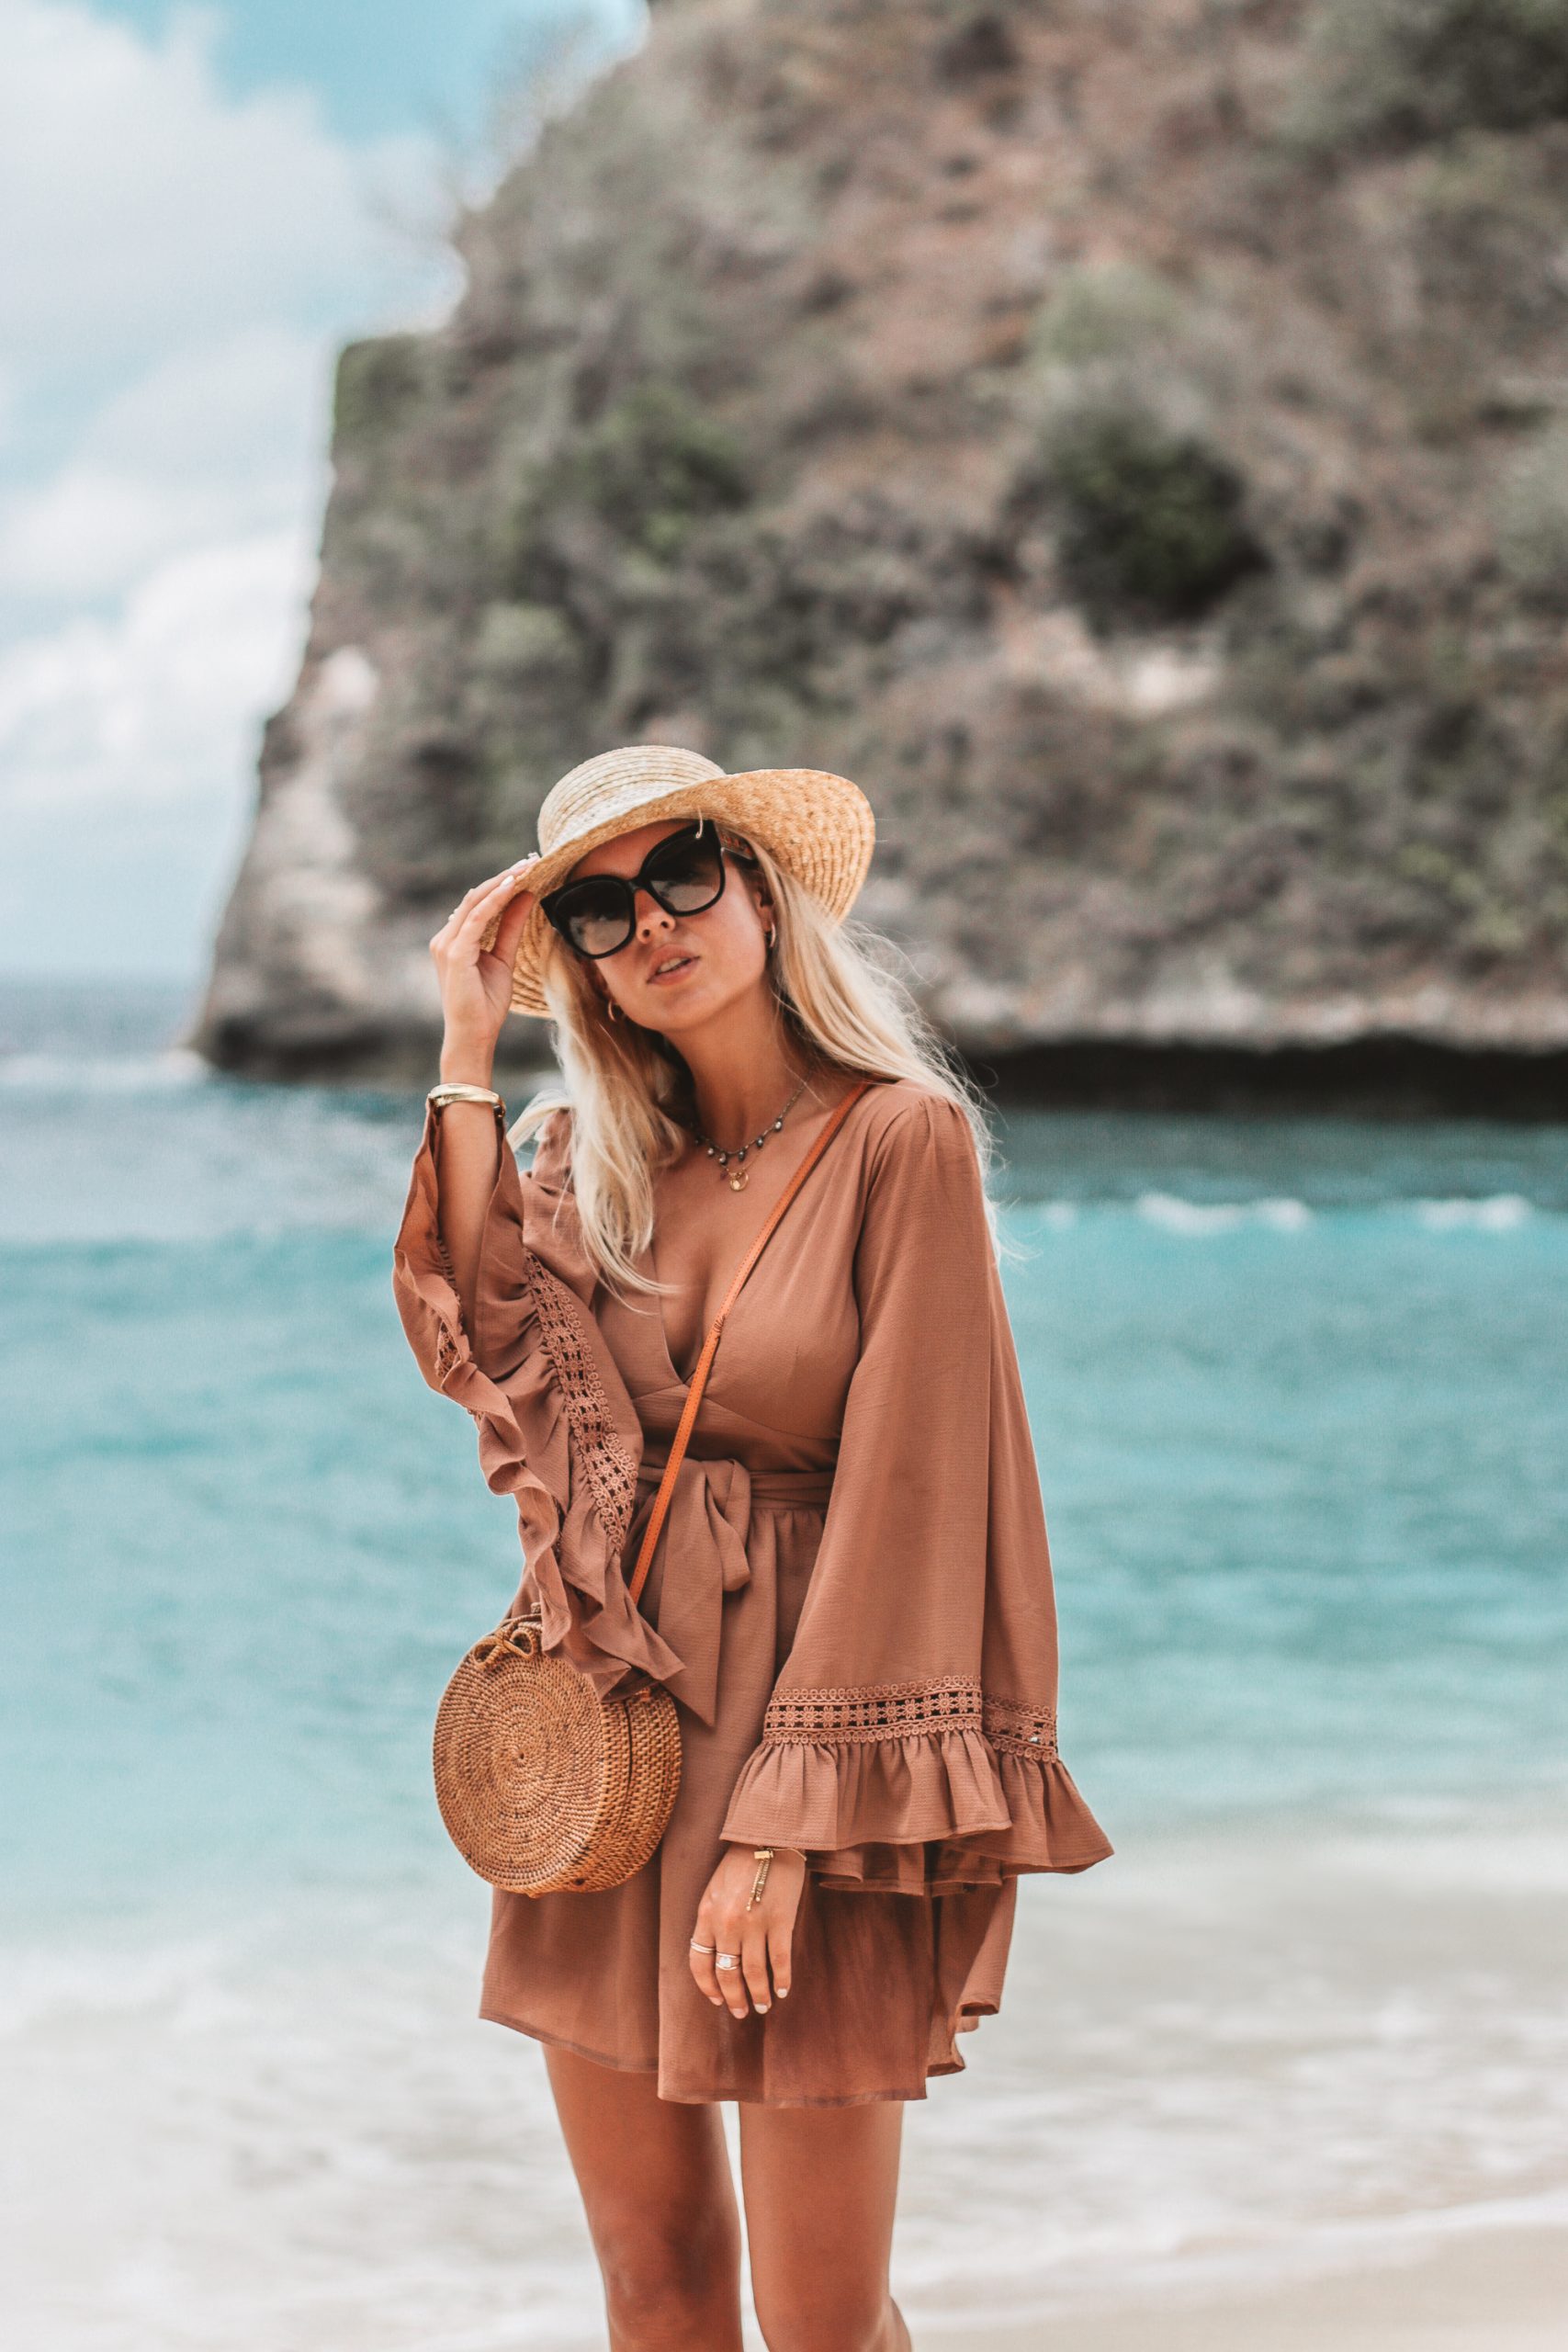 Beach outfit in Bali // Atuh Beach // Fashion blogger